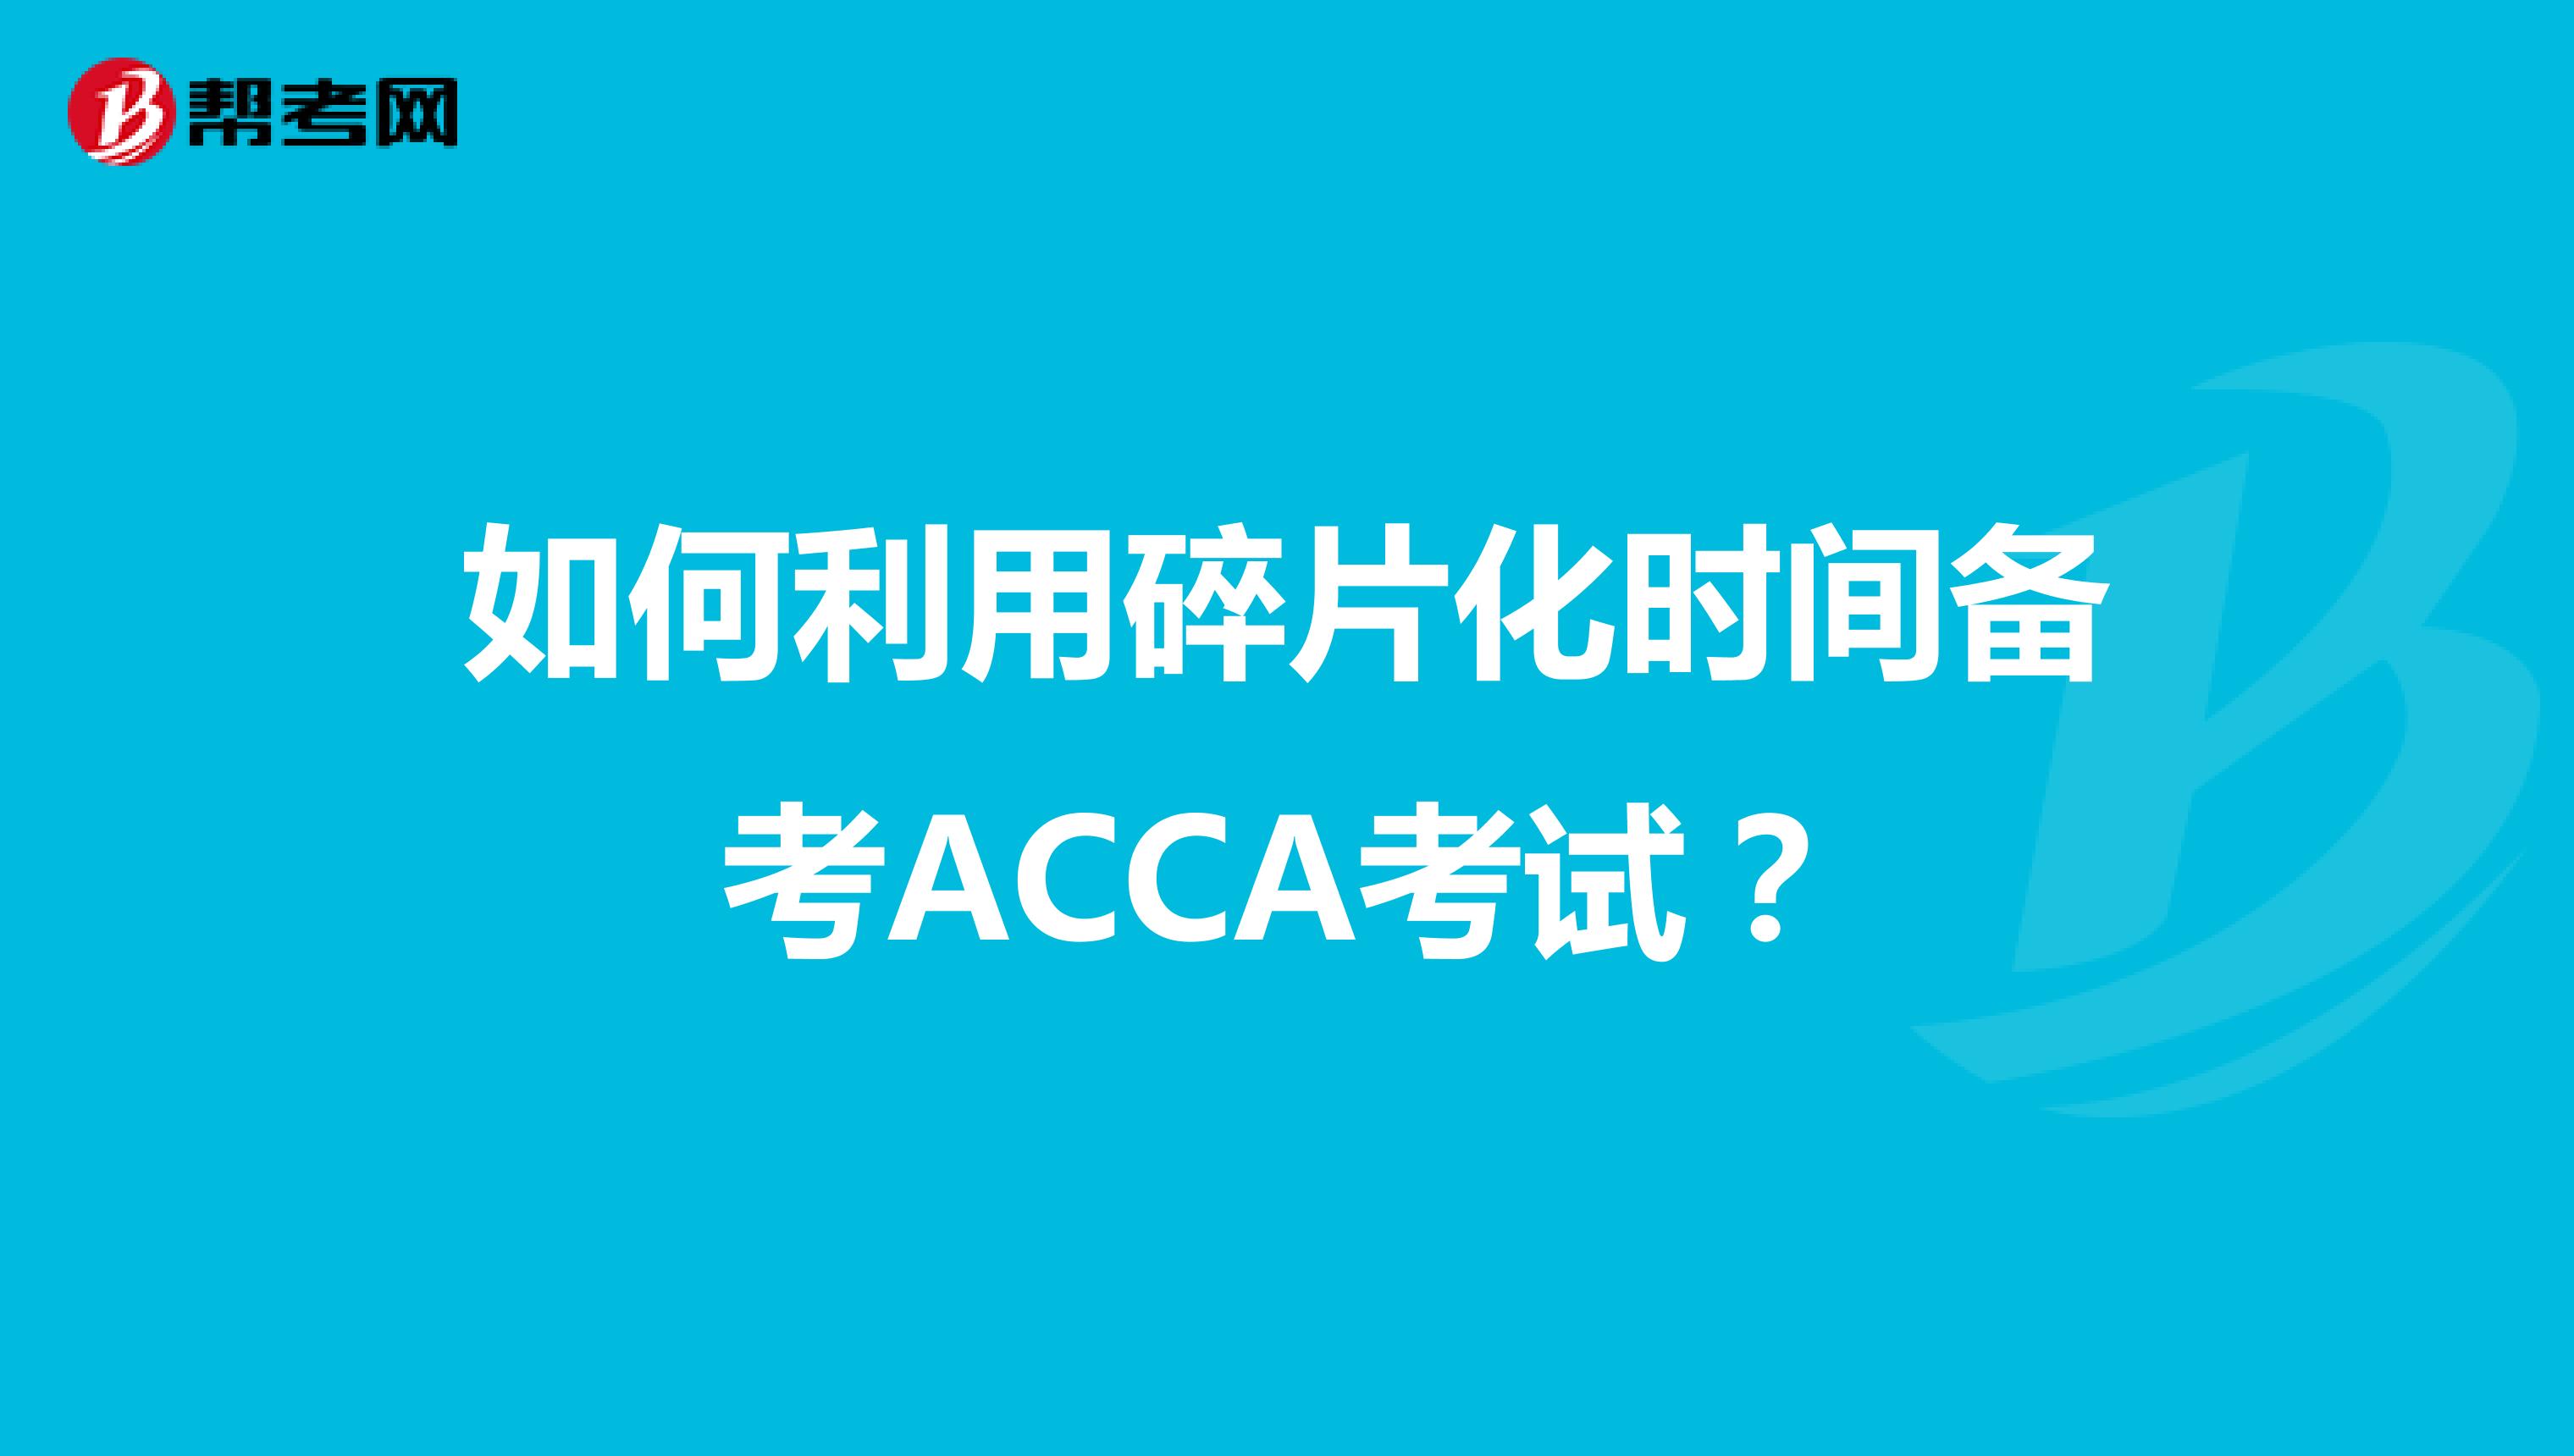 如何利用碎片化时间备考ACCA考试？